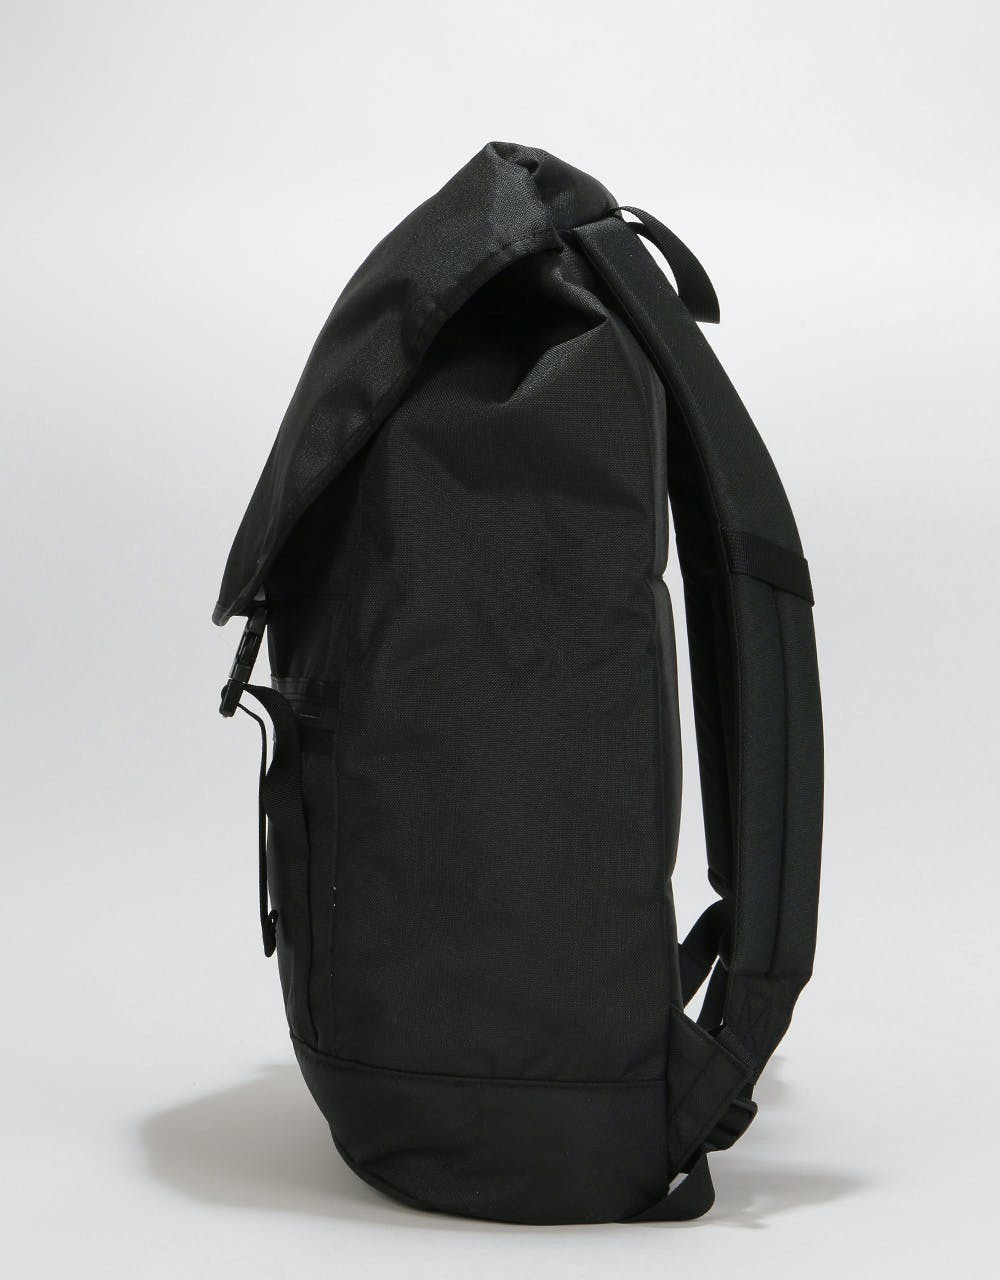 Patagonia Arbor Classic Pack 25L Backpack - Black